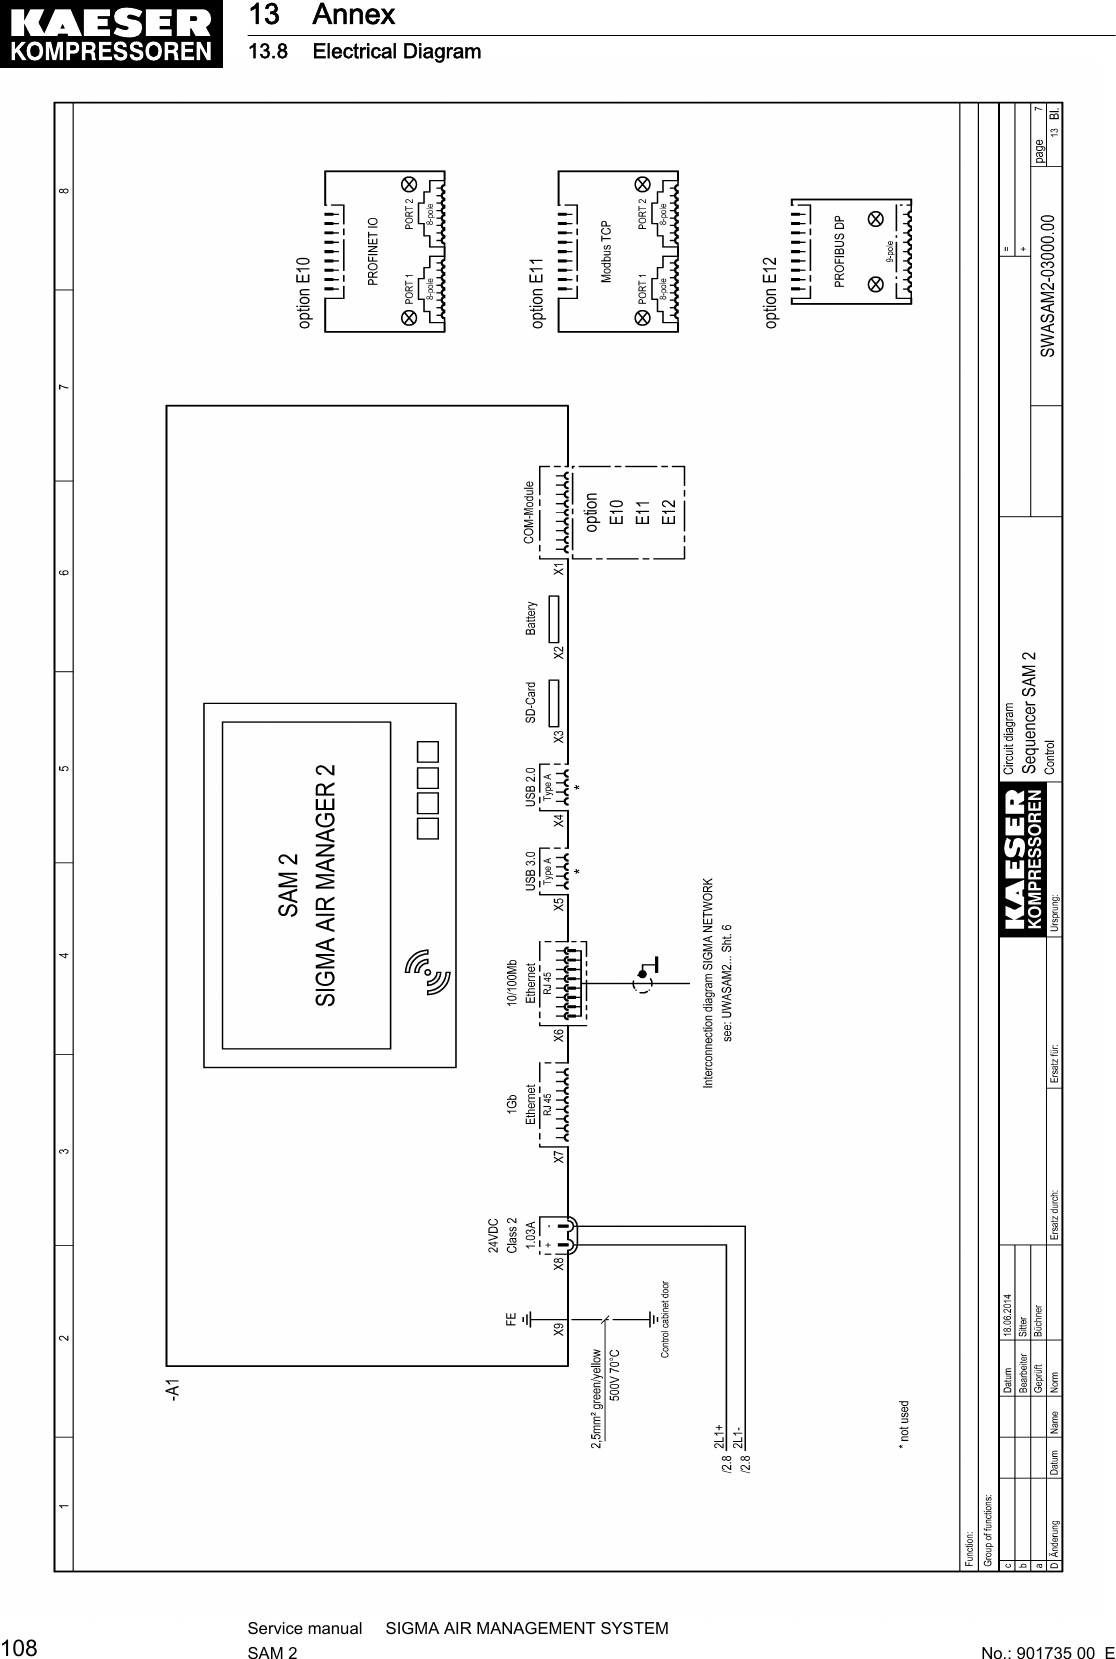 13 Annex13.8 Electrical Diagram108Service manual     SIGMA AIR MANAGEMENT SYSTEMSAM 2  No.: 901735 00  E